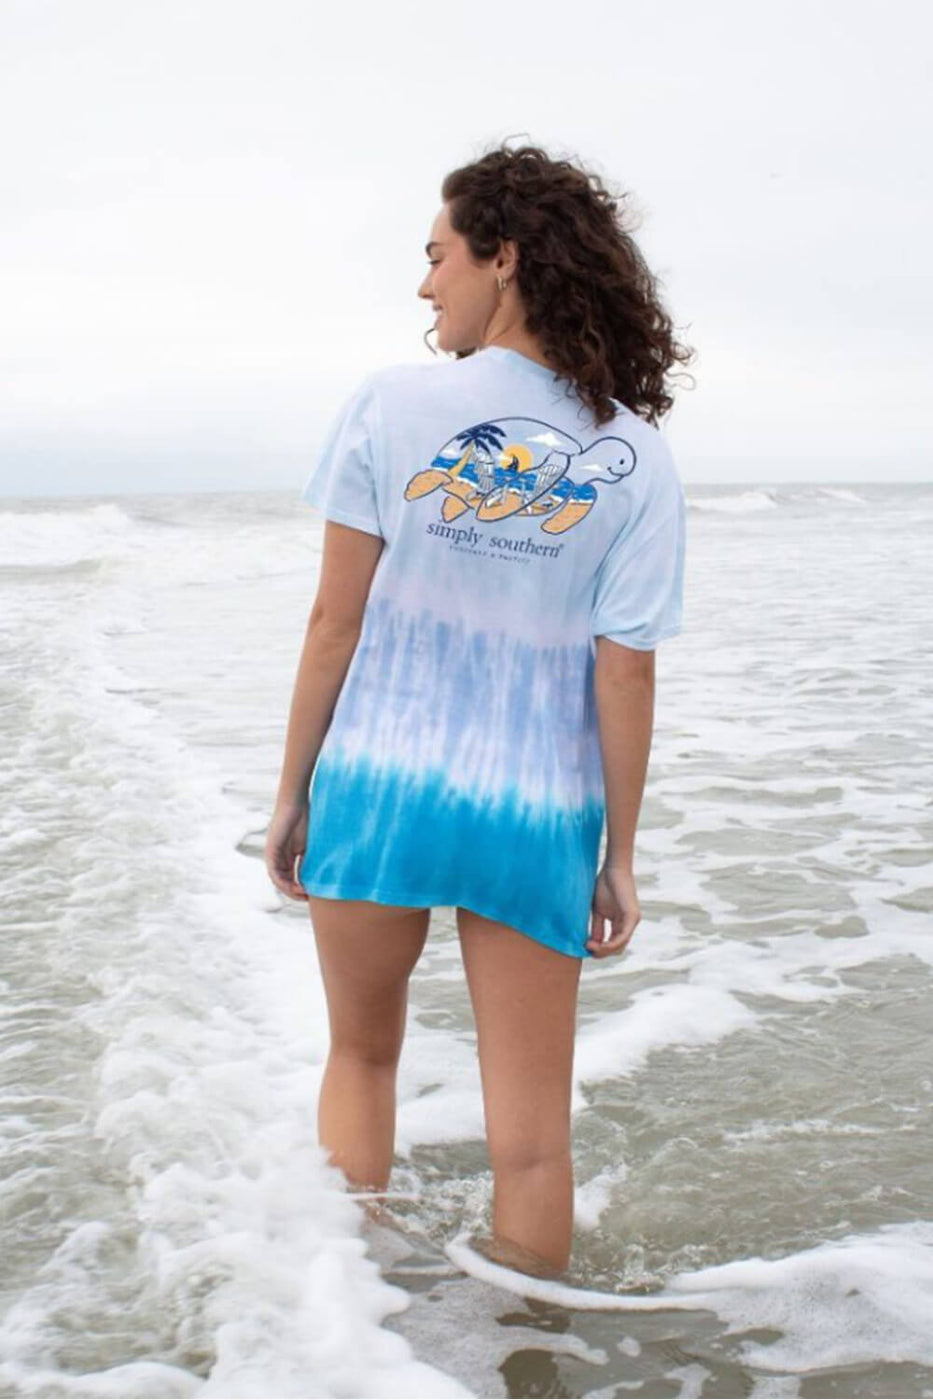 Huk Women ' S Spiral Dye Double Header Shirt - Beach Glass